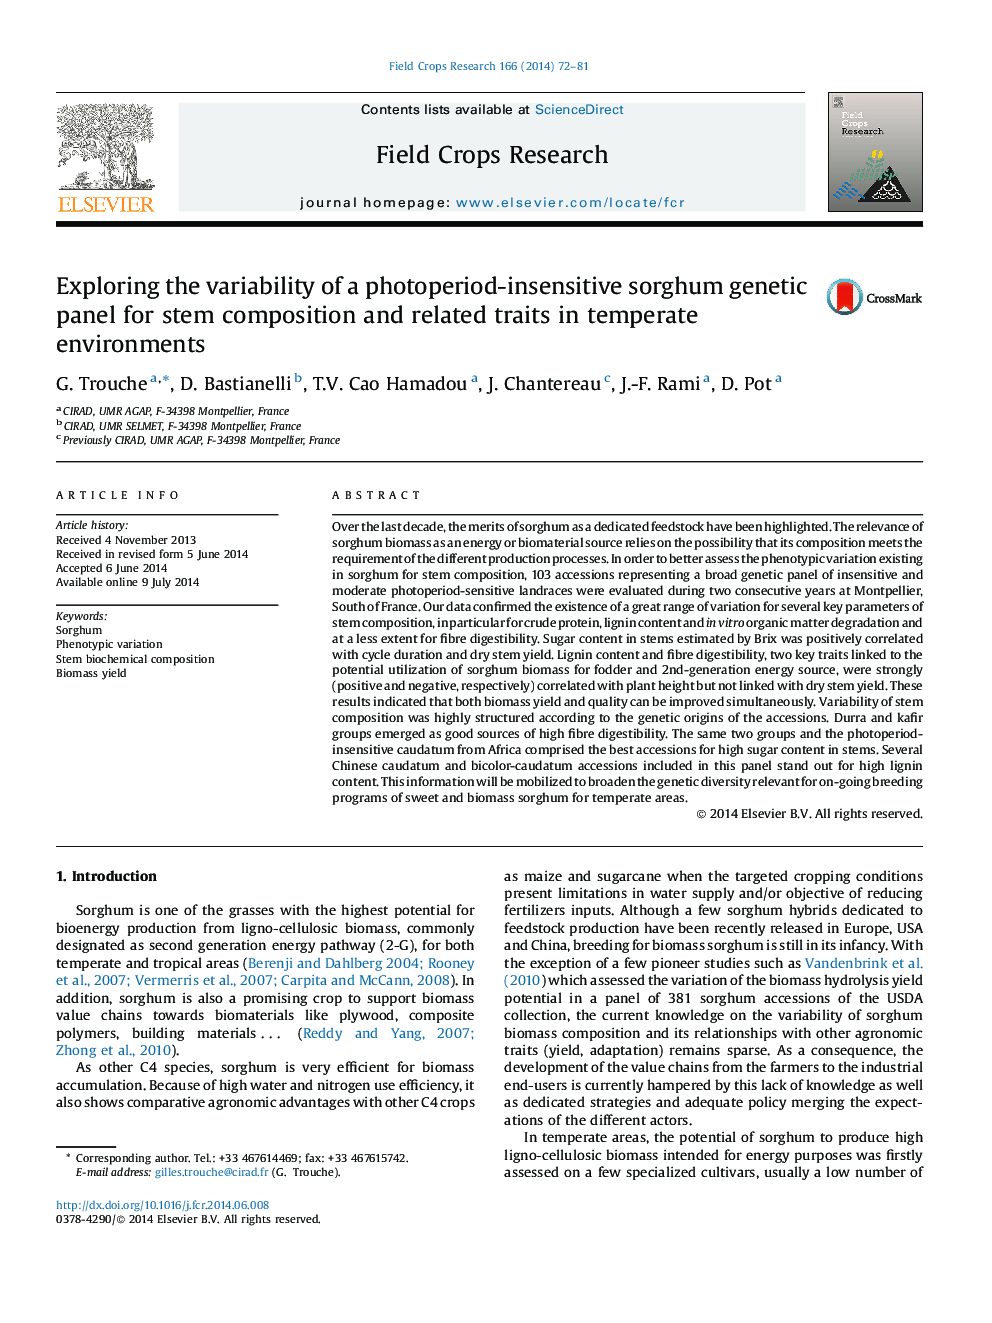 بررسی تغییرات پانل ژنتیکی سورگوم بدون حساسیت فتوتراپی برای ترکیب ساقه و صفات مرتبط با آن در محیط های معتدل 